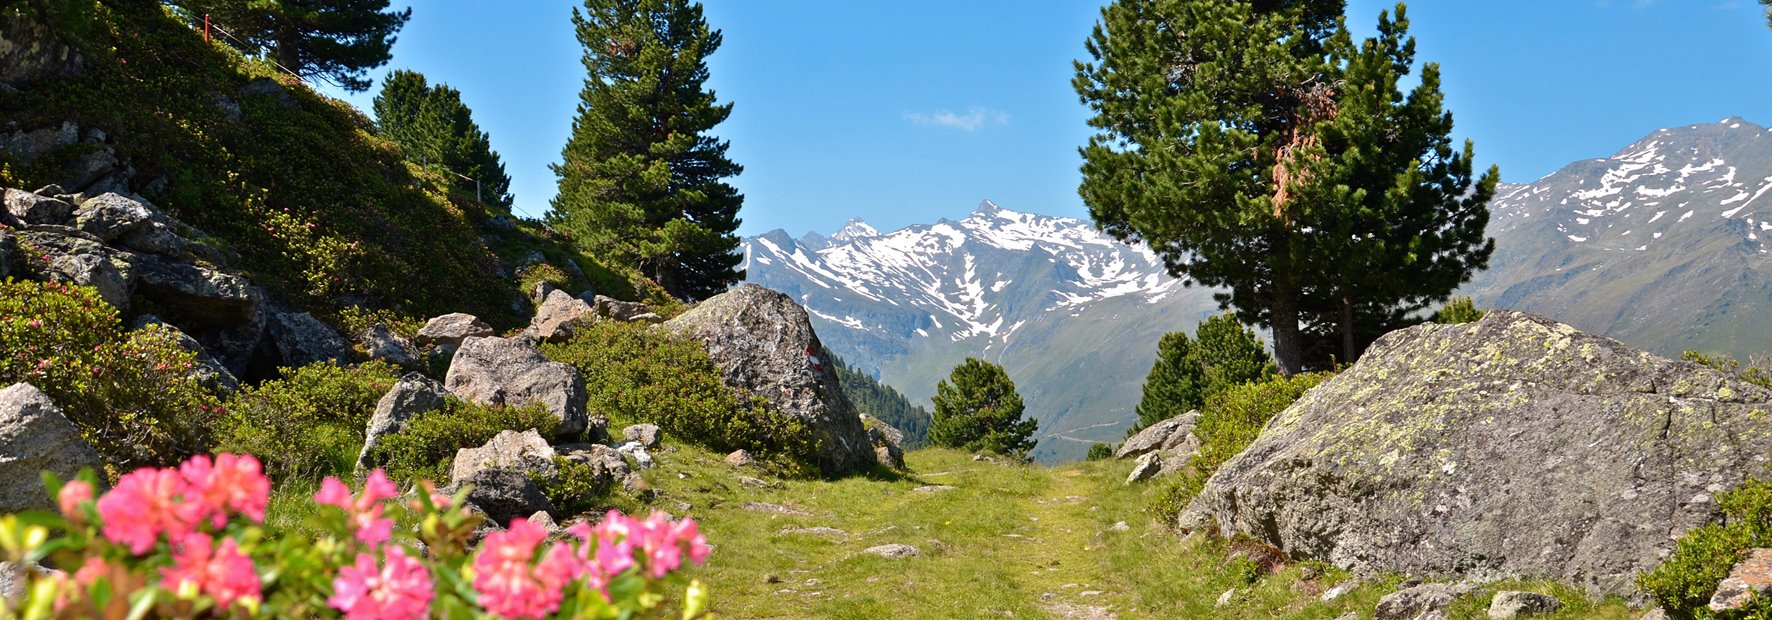 …die einzigartige Tiroler Bergwelt hautnah erleben…